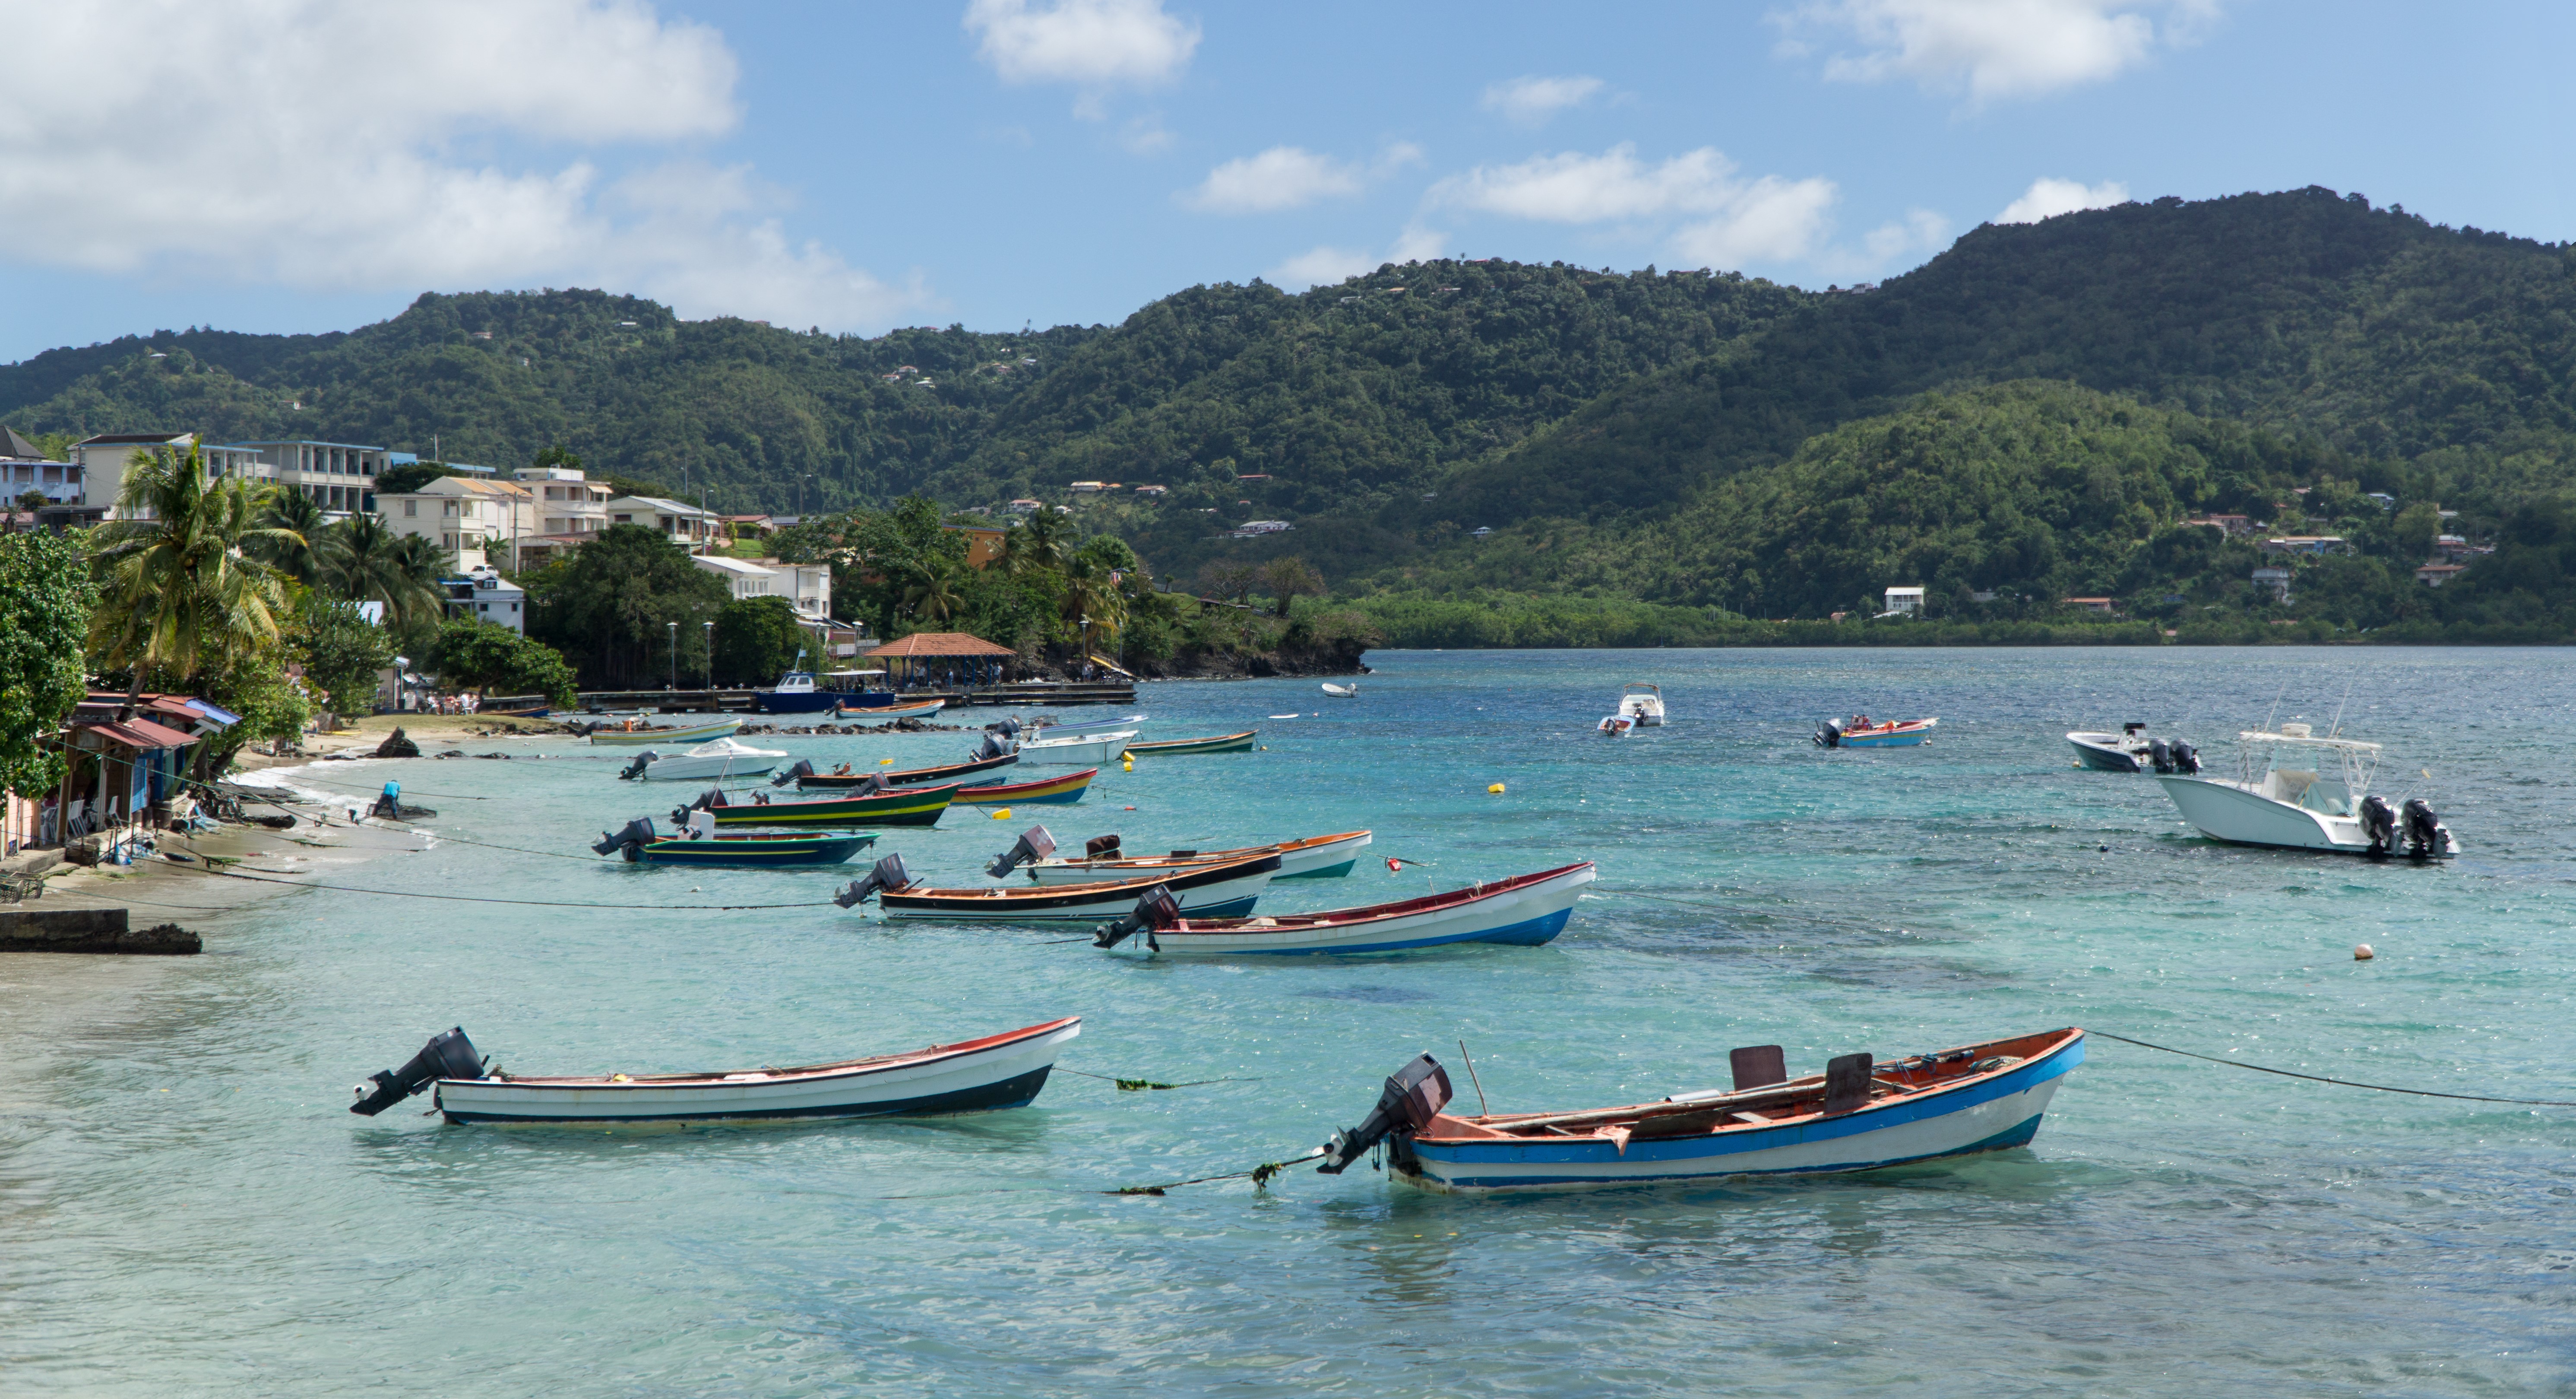     16 millions d'euros pour renouveler la flotte de pêche en Martinique

